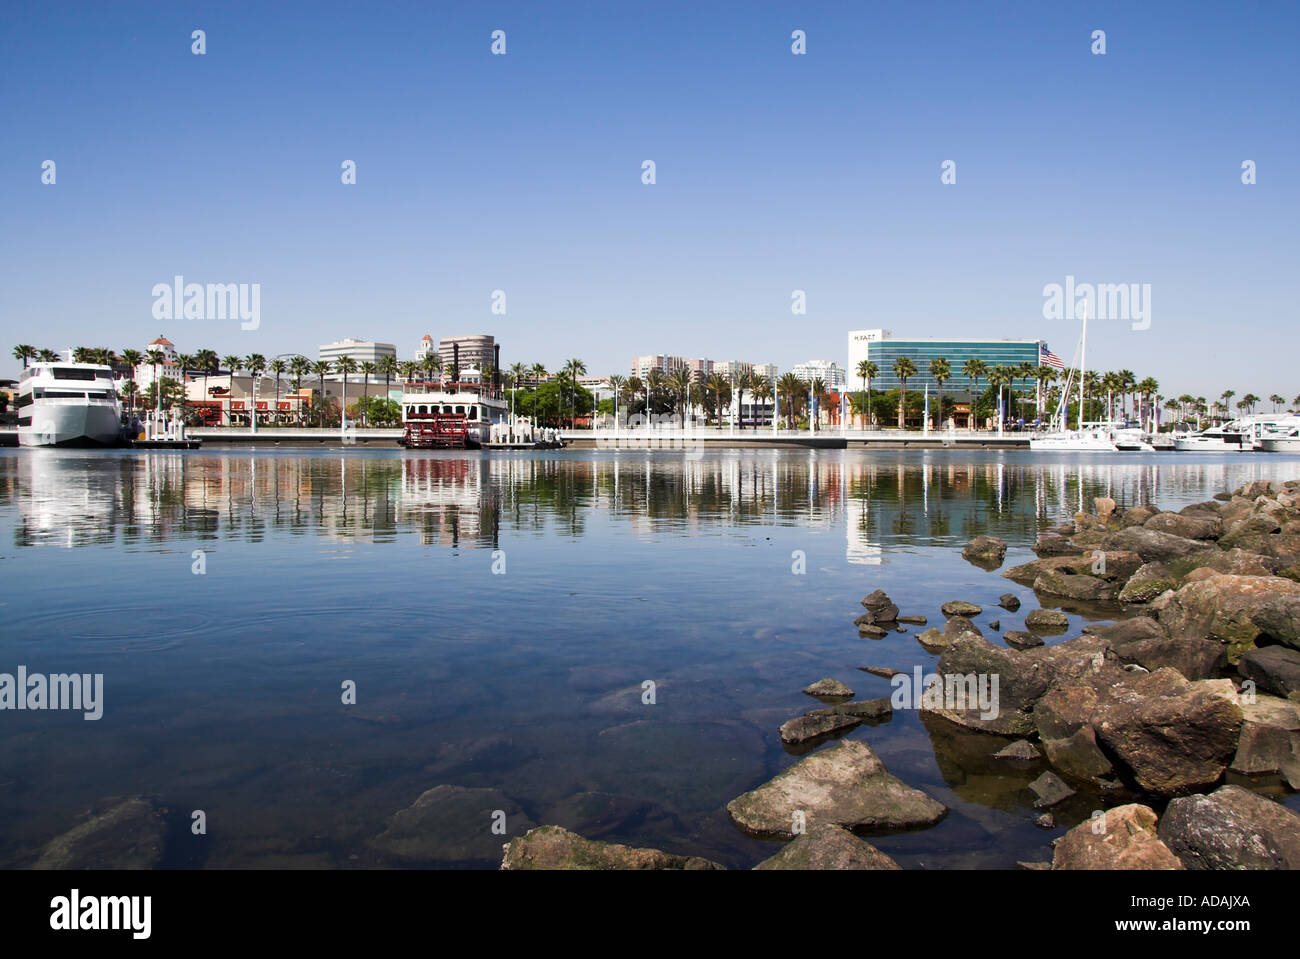 Downtown Long Beach skyline across Rainbow Harbor, California, USA Stock Photo